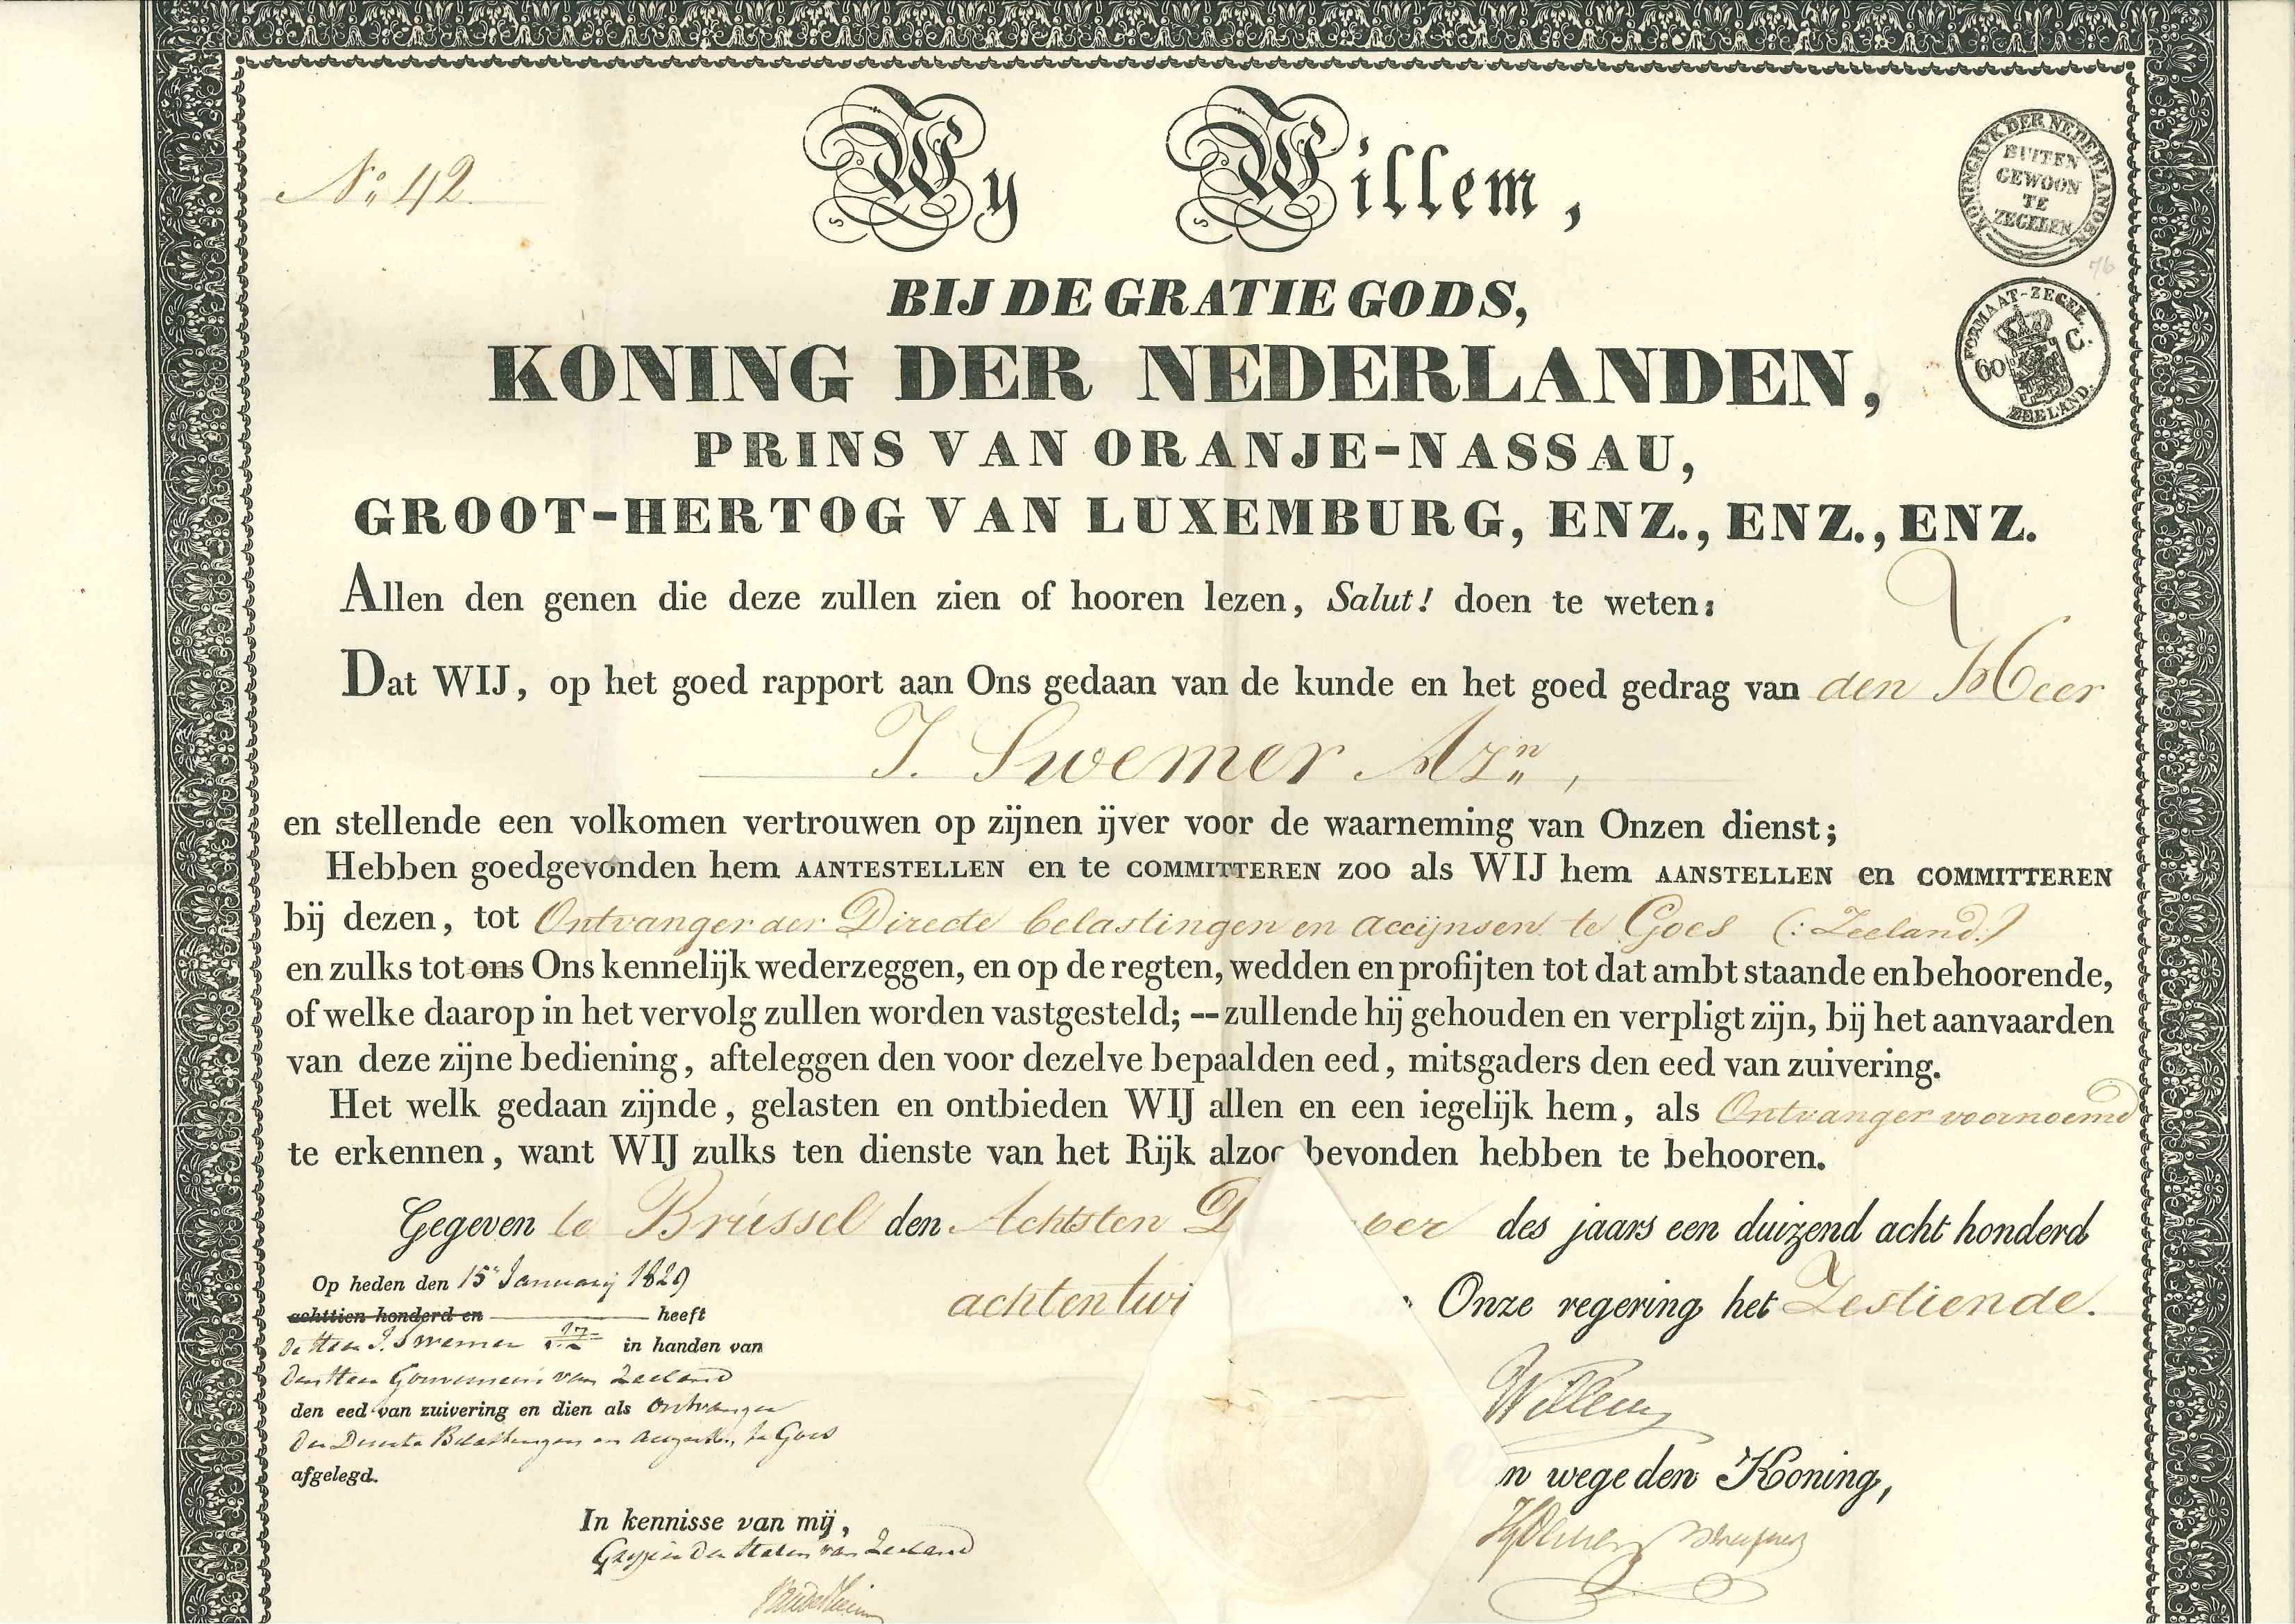 Koninklijke aanstelling van J. Swemer Azn als ontvanger van Goes, 1828. GAG.Fam.arch. Swemer.